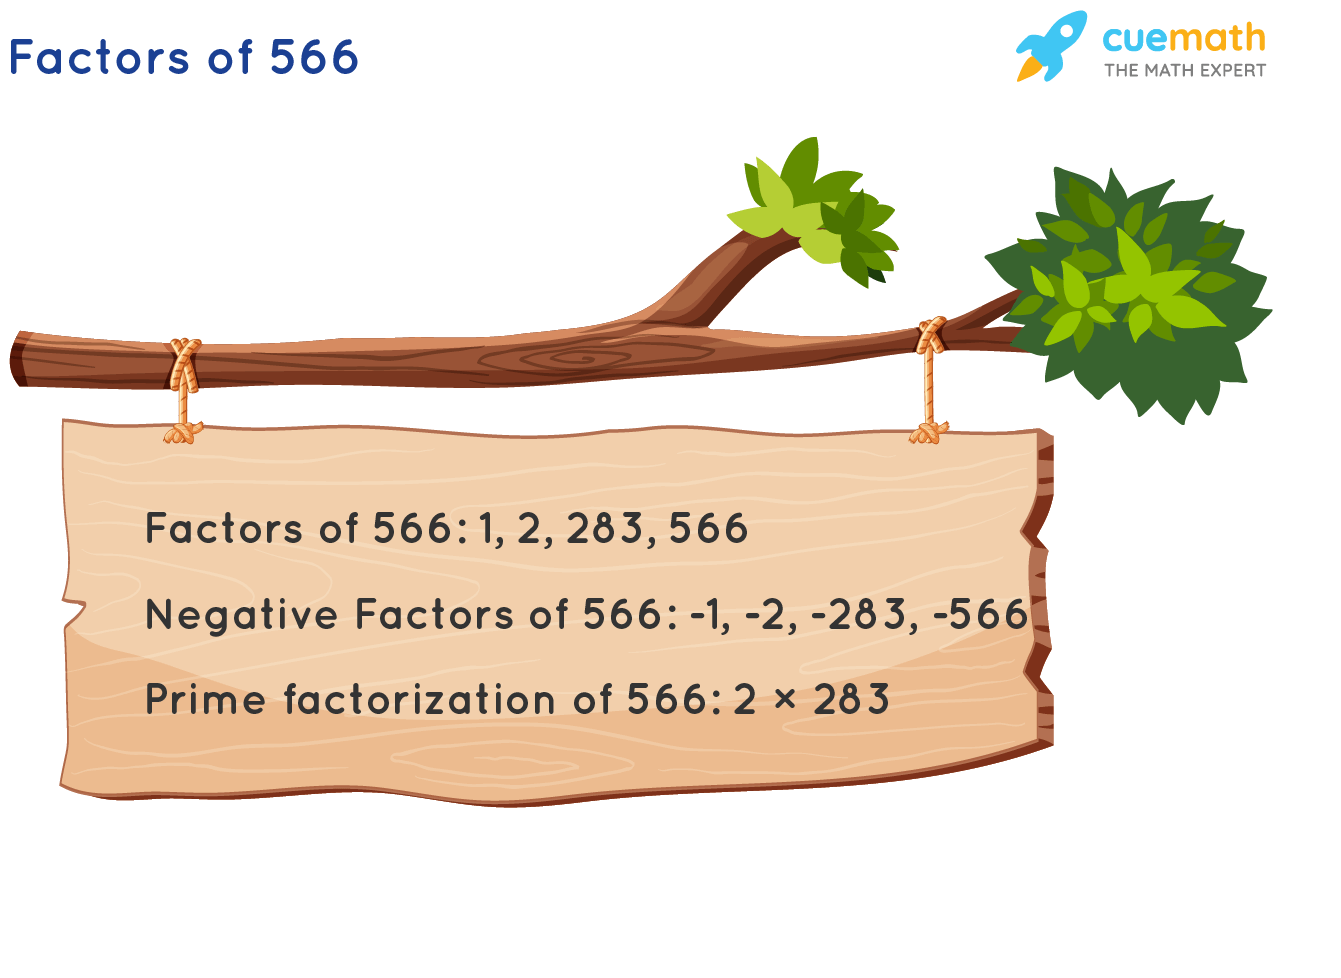 Factors of 566